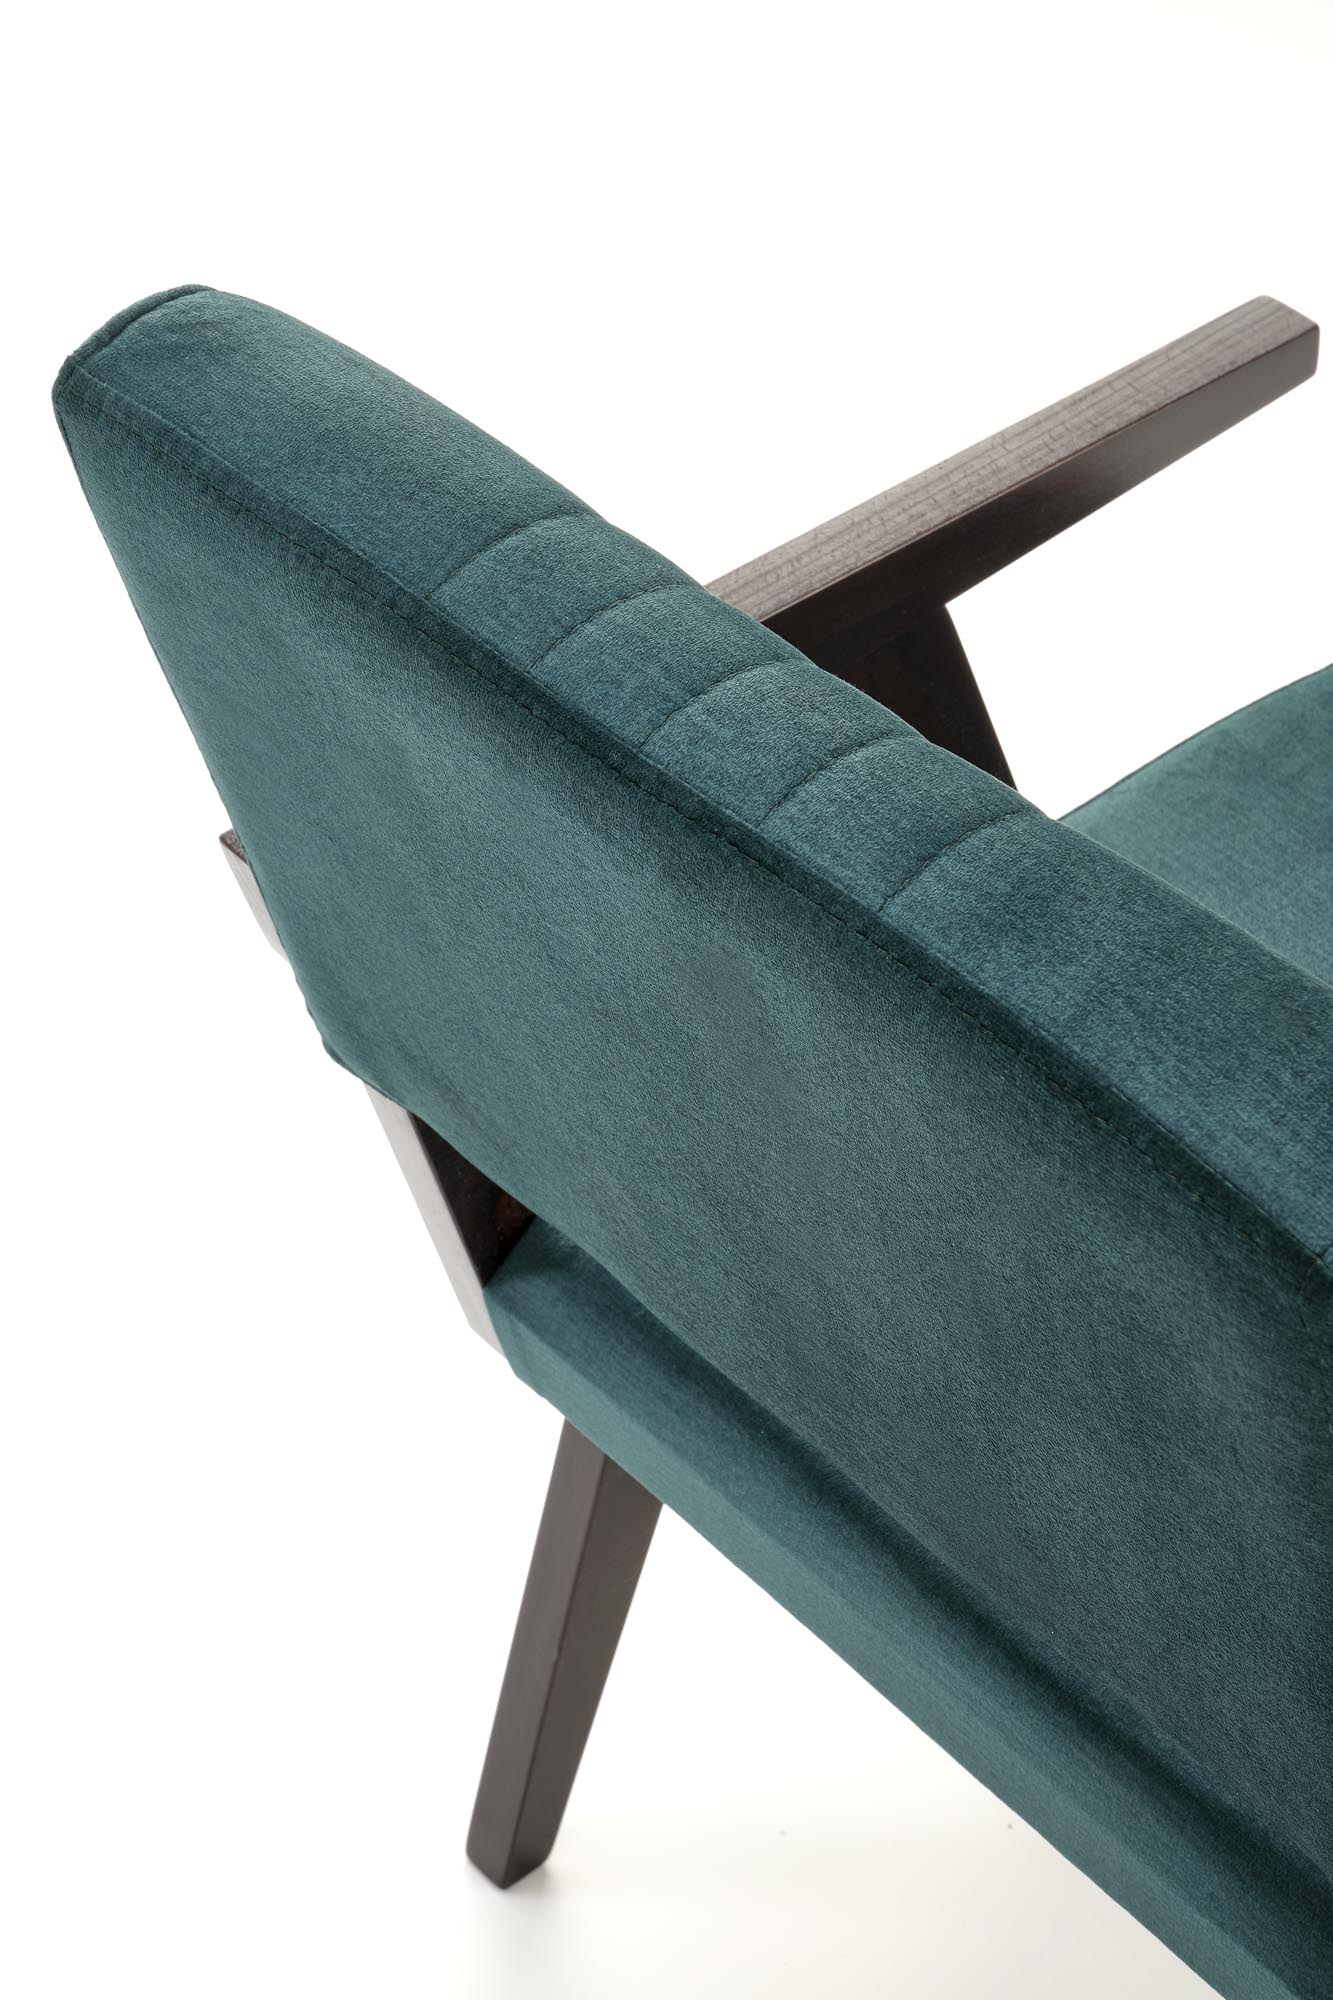 Krzesło tapicerowane z podłokietnikami Memory - heban / ciemny zielony krzesło tapicerowane z podłokietnikami memory - heban / ciemny zielony